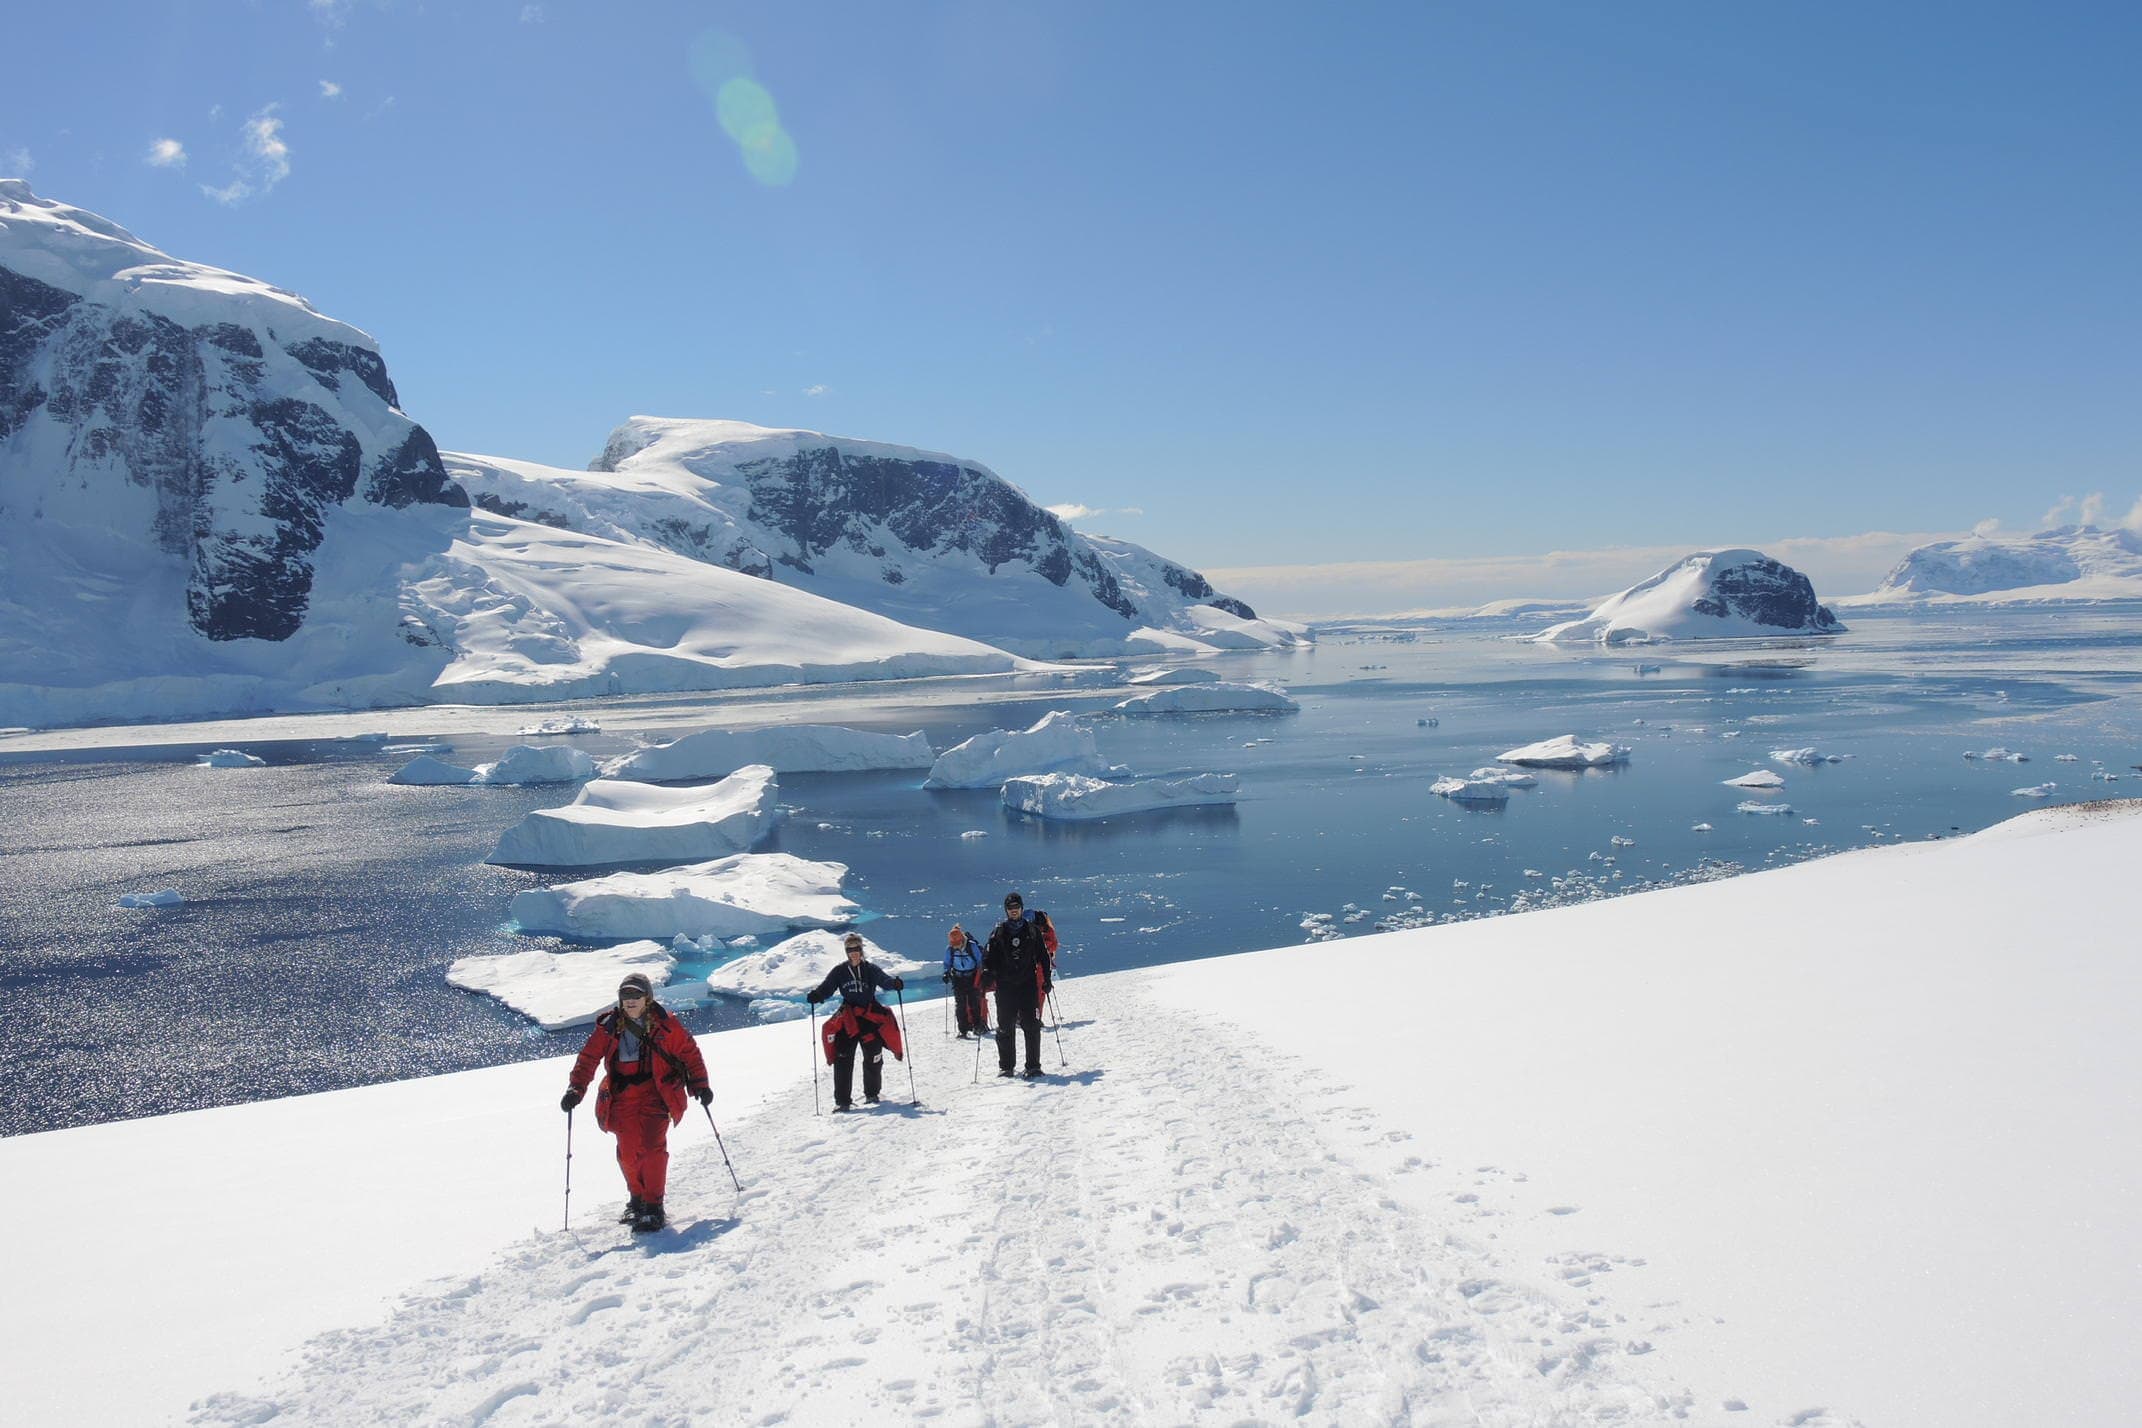 Antarctica danco island snowshoers walking